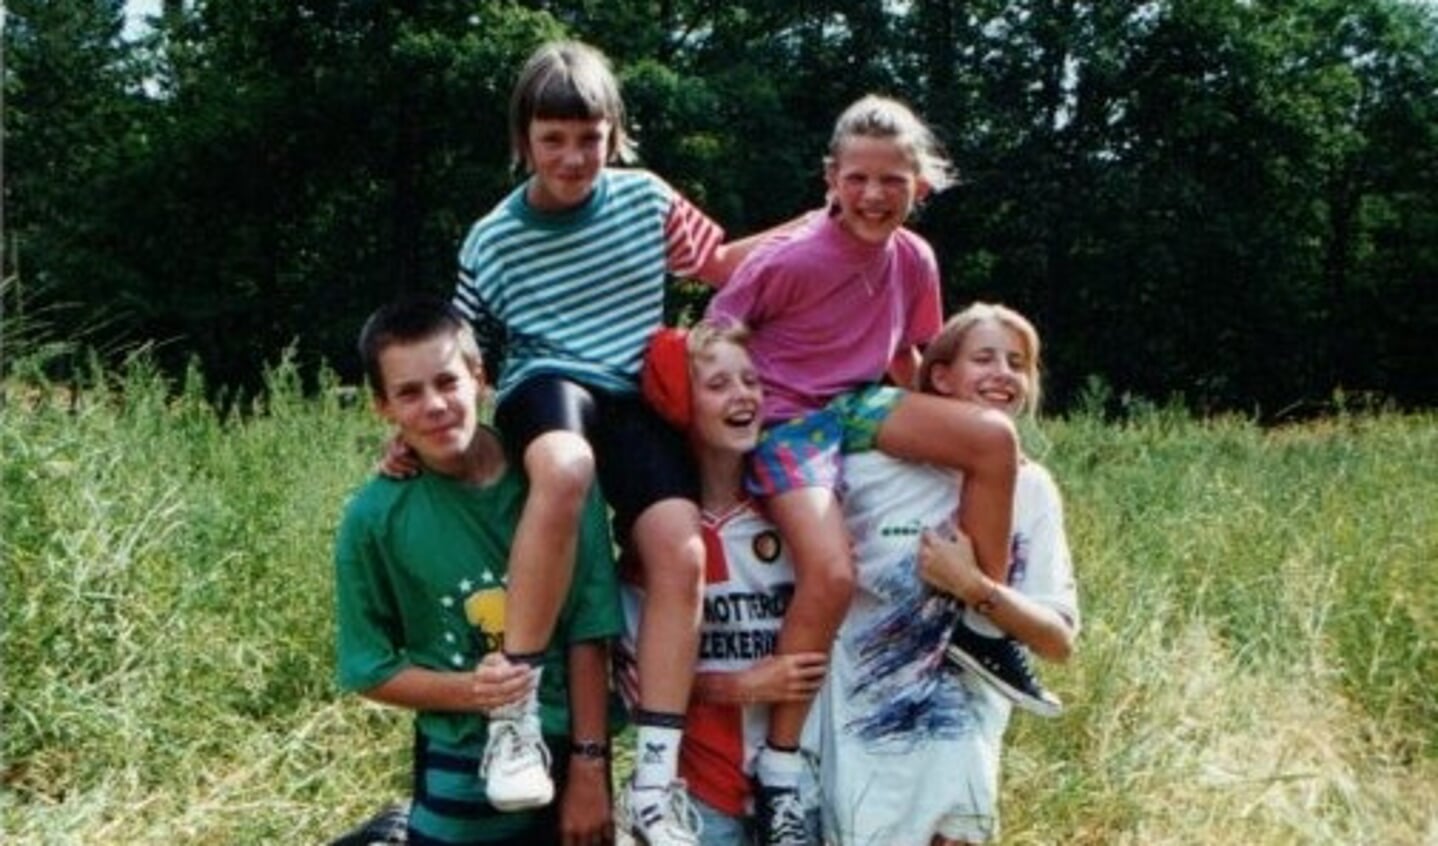 Vijf kinderen bouwen met elkaar een toren. Deze foto is uit 1994. Foto: archief